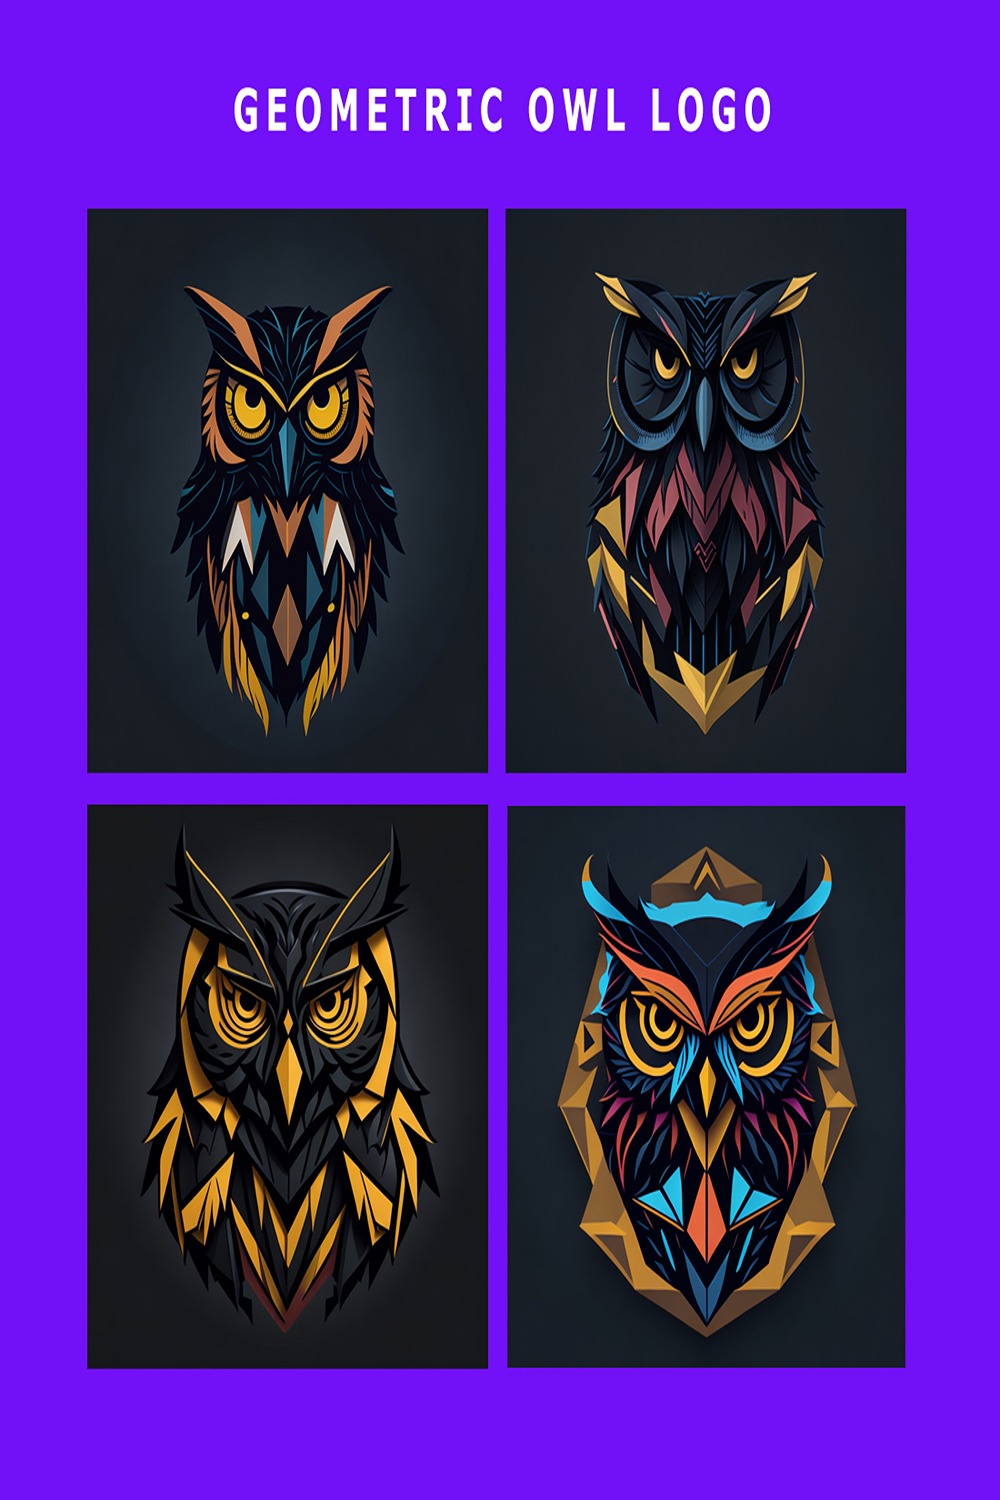 Owl - Geometric Logo Design Template, owl logo business, owl logo vector, owl logo education, owl logo icon, owl logo pinterest preview image.